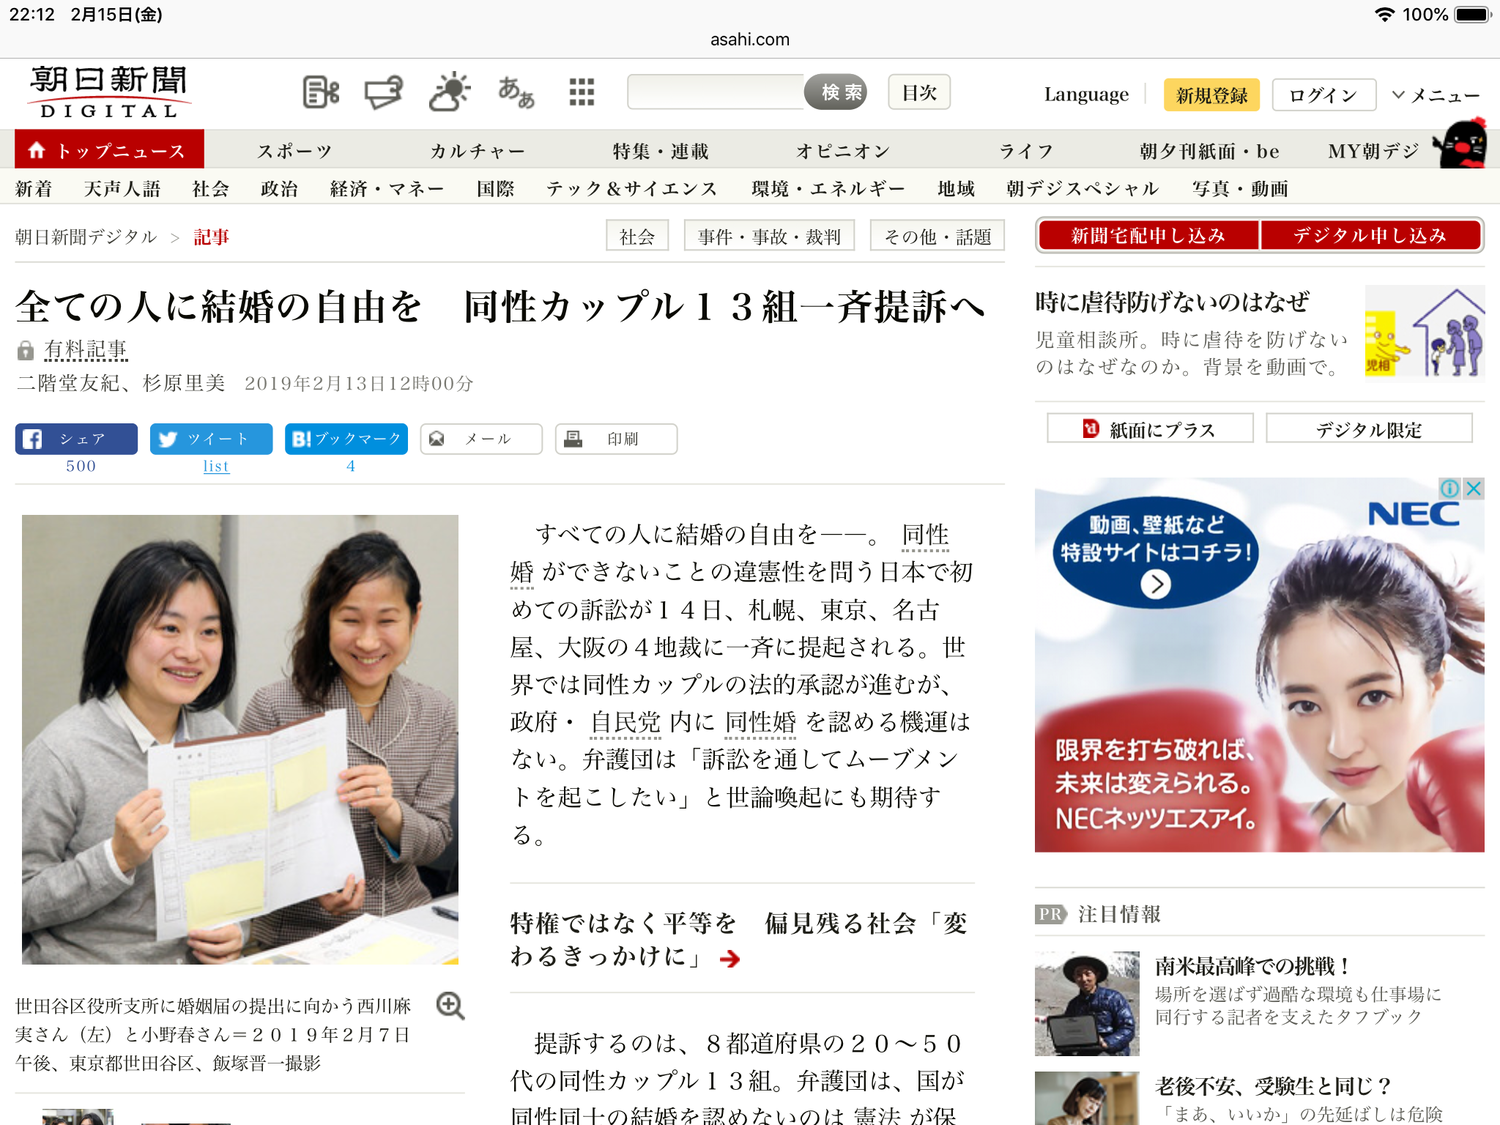 朝日網路新聞也以重要新聞來報導史上第一次的要求同婚的司法訴訟。